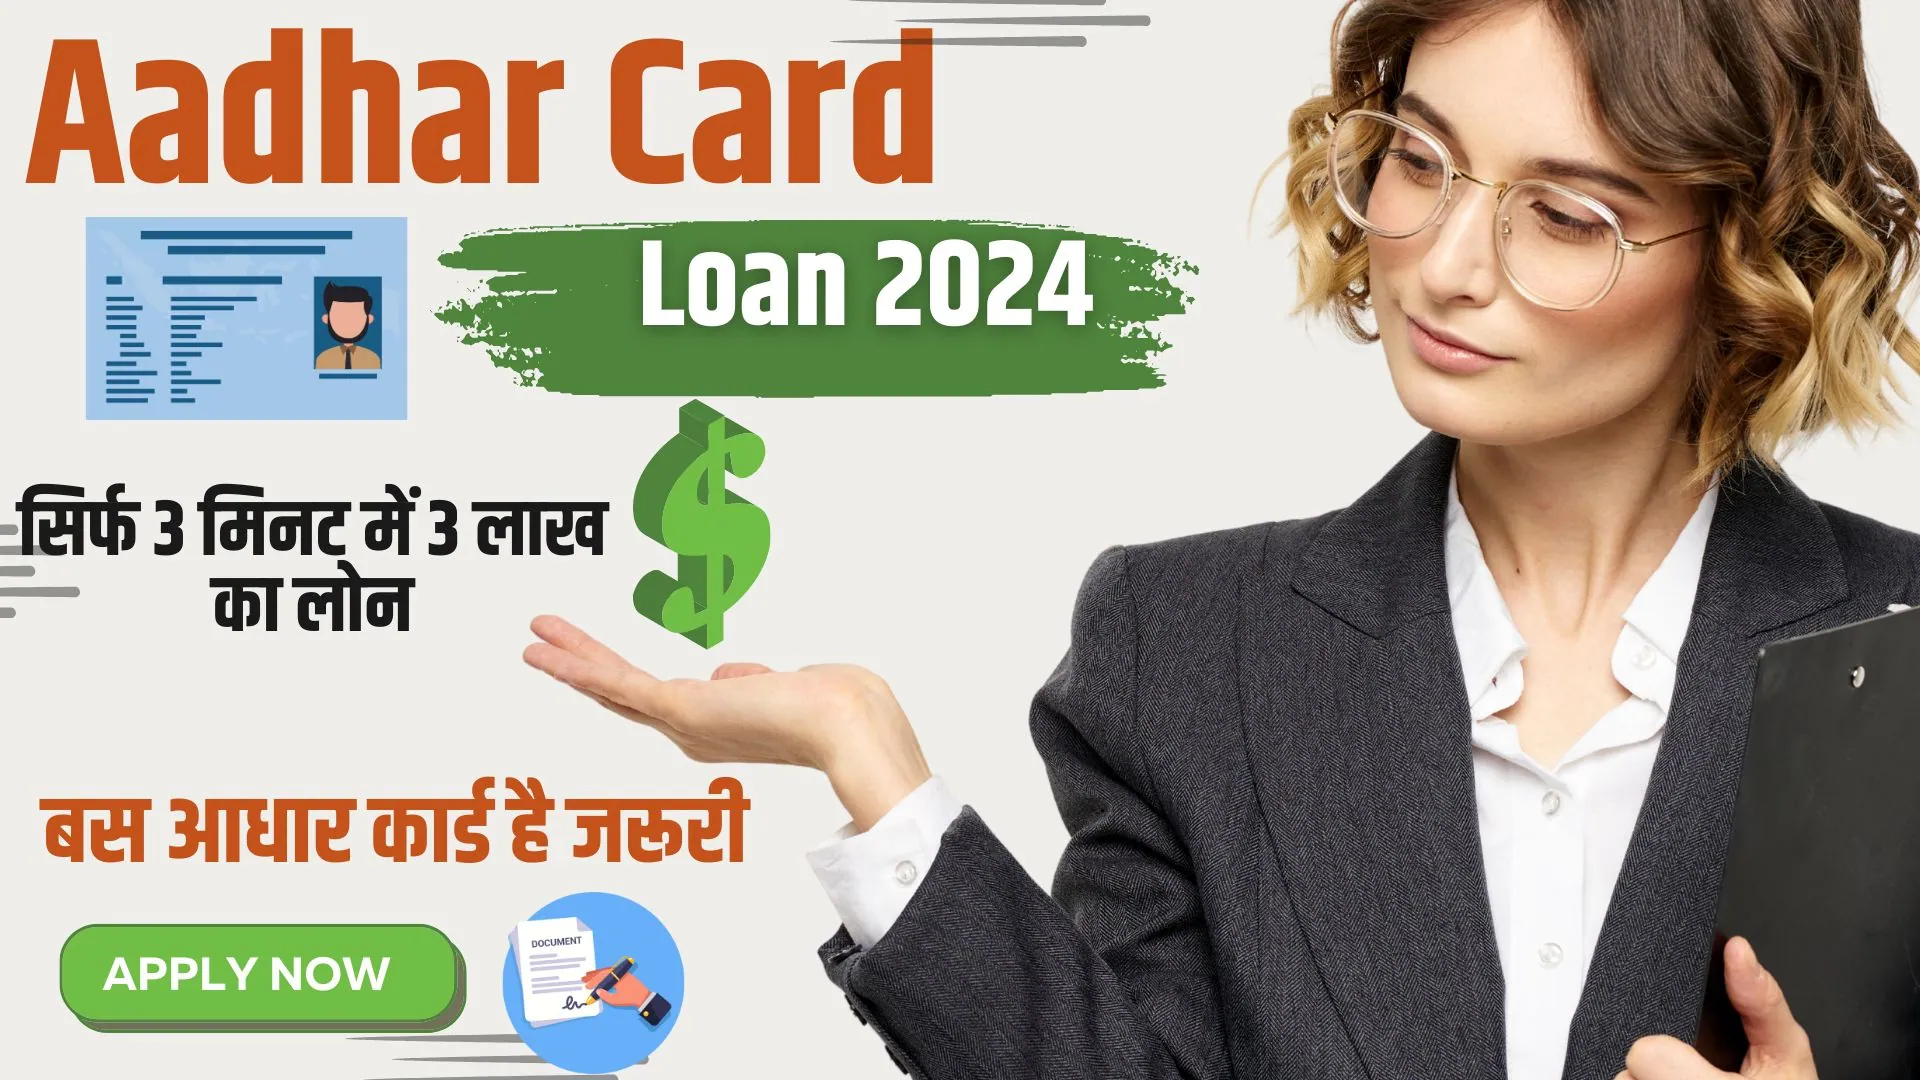 Aadhar Card Loan 2024: भरोसा नहीं होगा! सिर्फ 3 मिनट में 3 लाख का लोन, बस आधार कार्ड है जरूरी